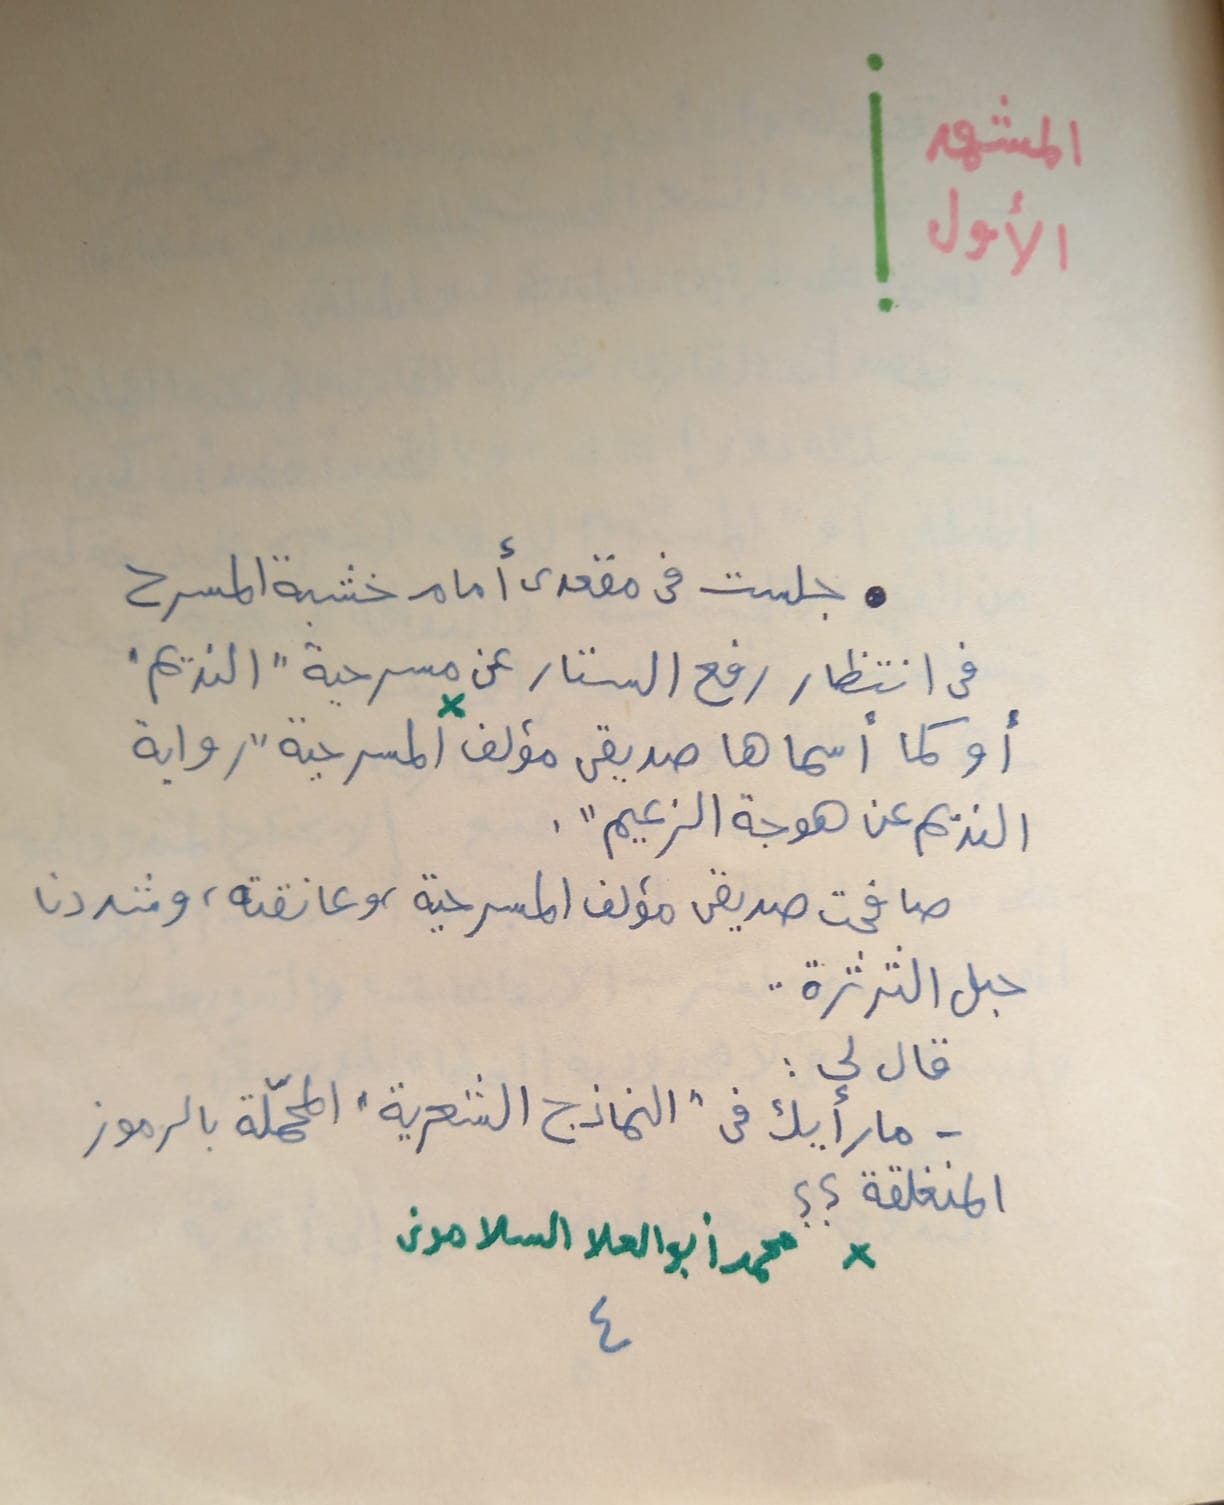 حوار بين الشاعر محمد يوسف والمسرحى ألو العلا السلامونى فى المشهد الأول